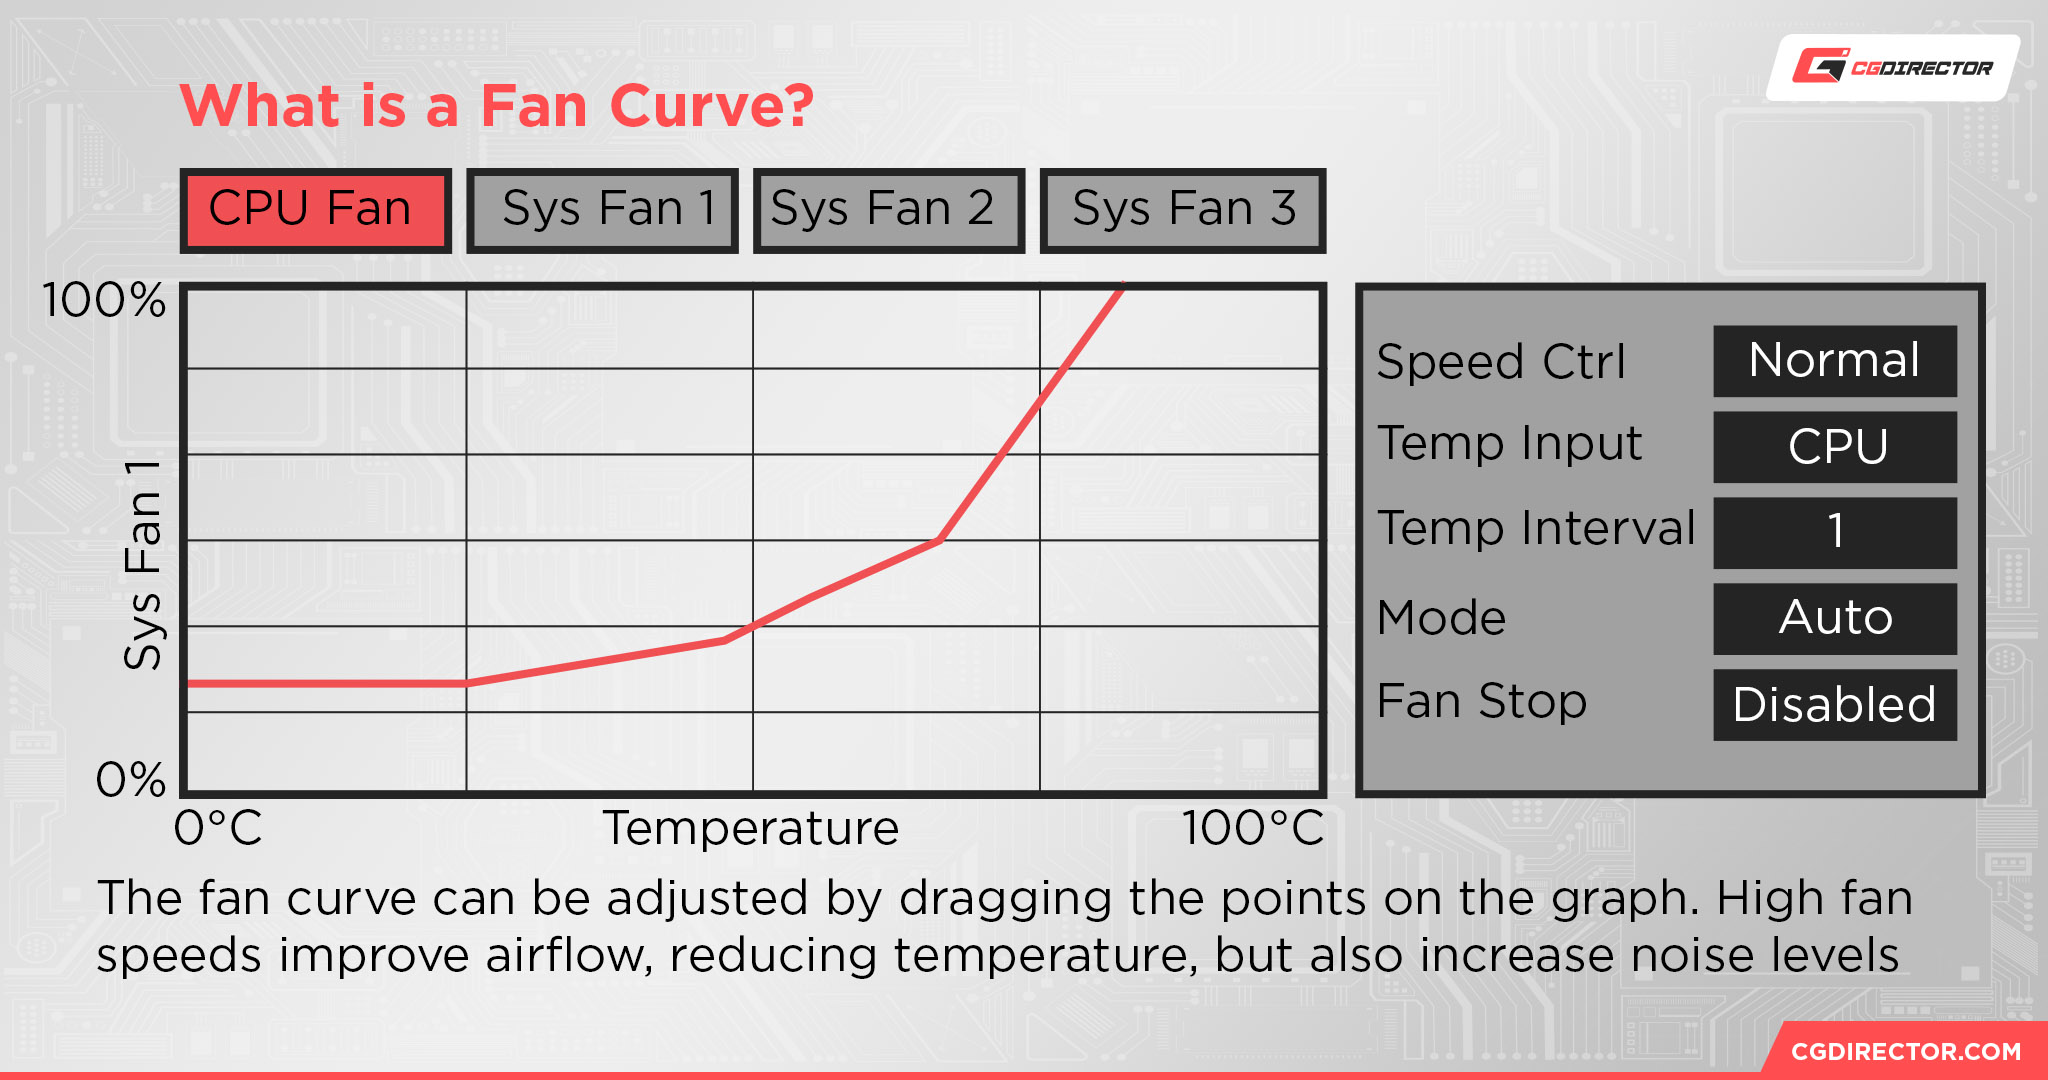 What is a Fan Curve